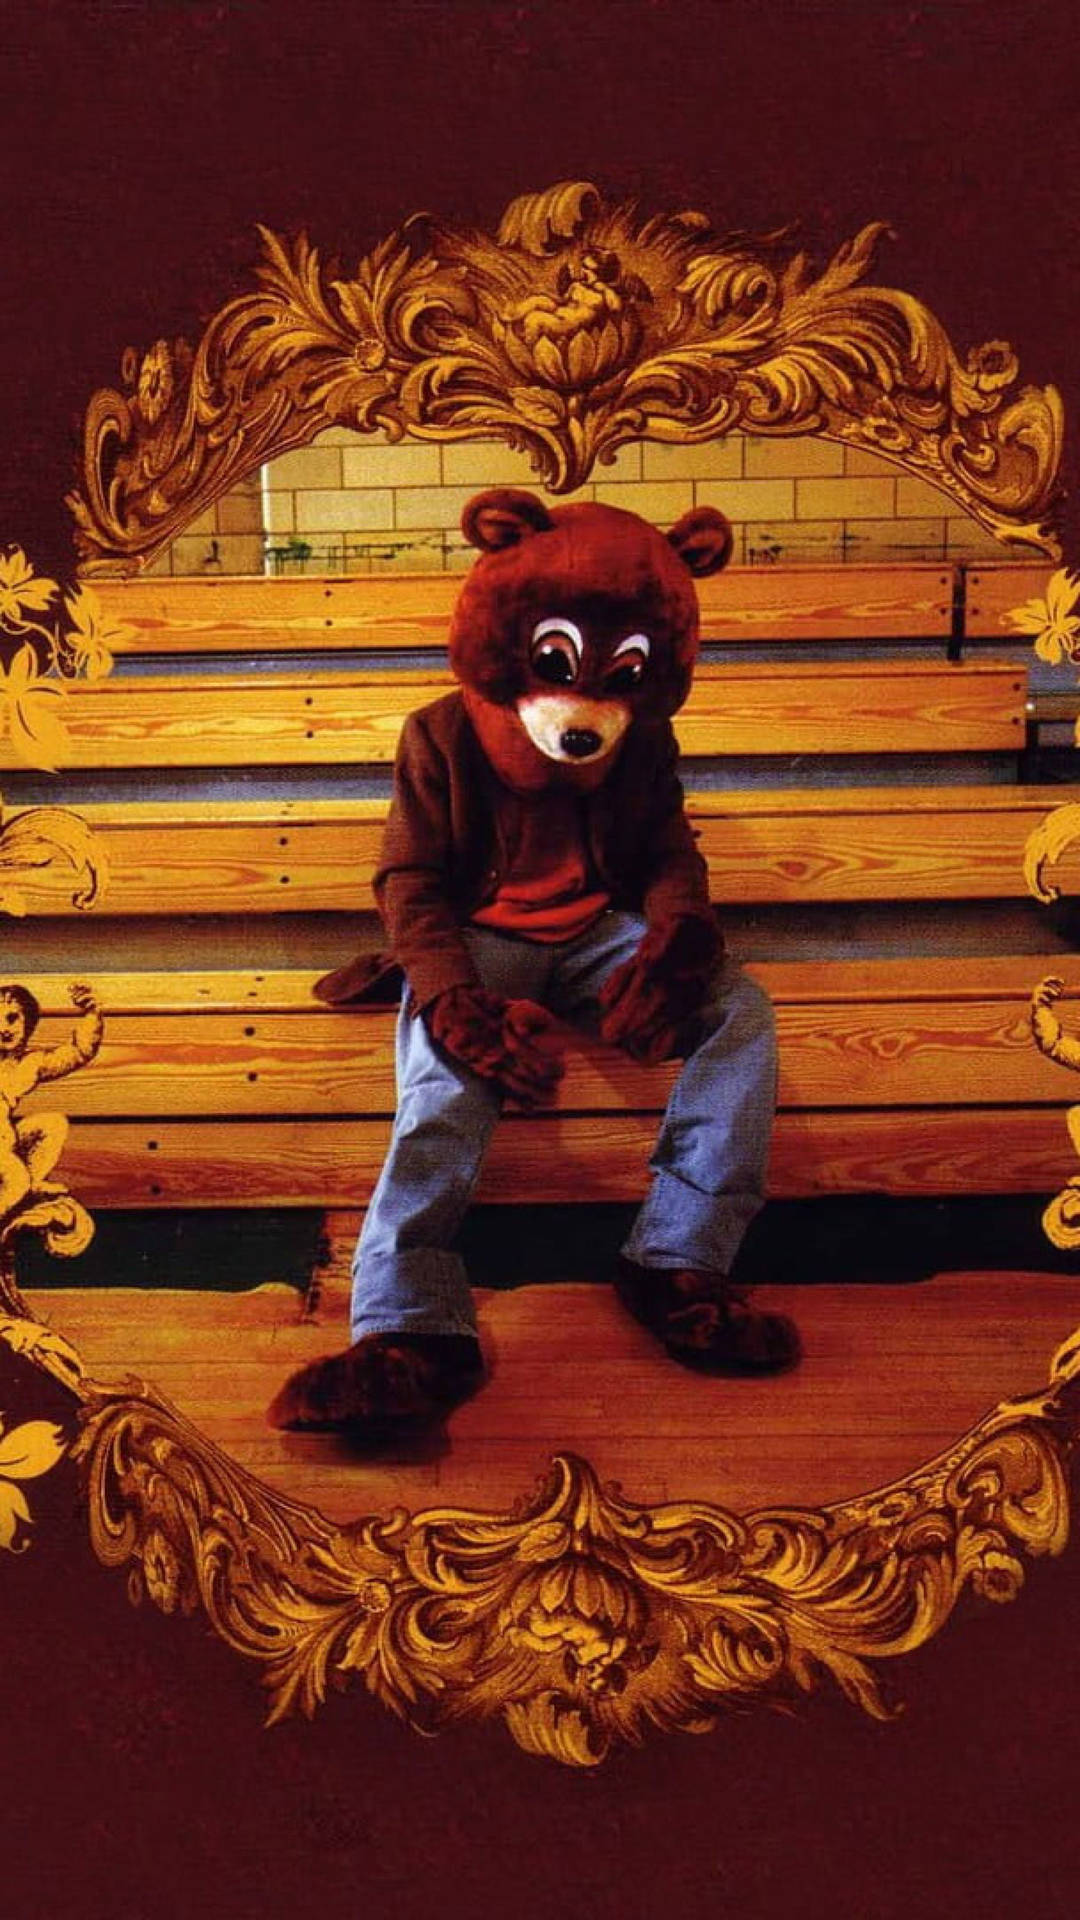 Kanye West Bear Mascot Costume On Bleachers Background